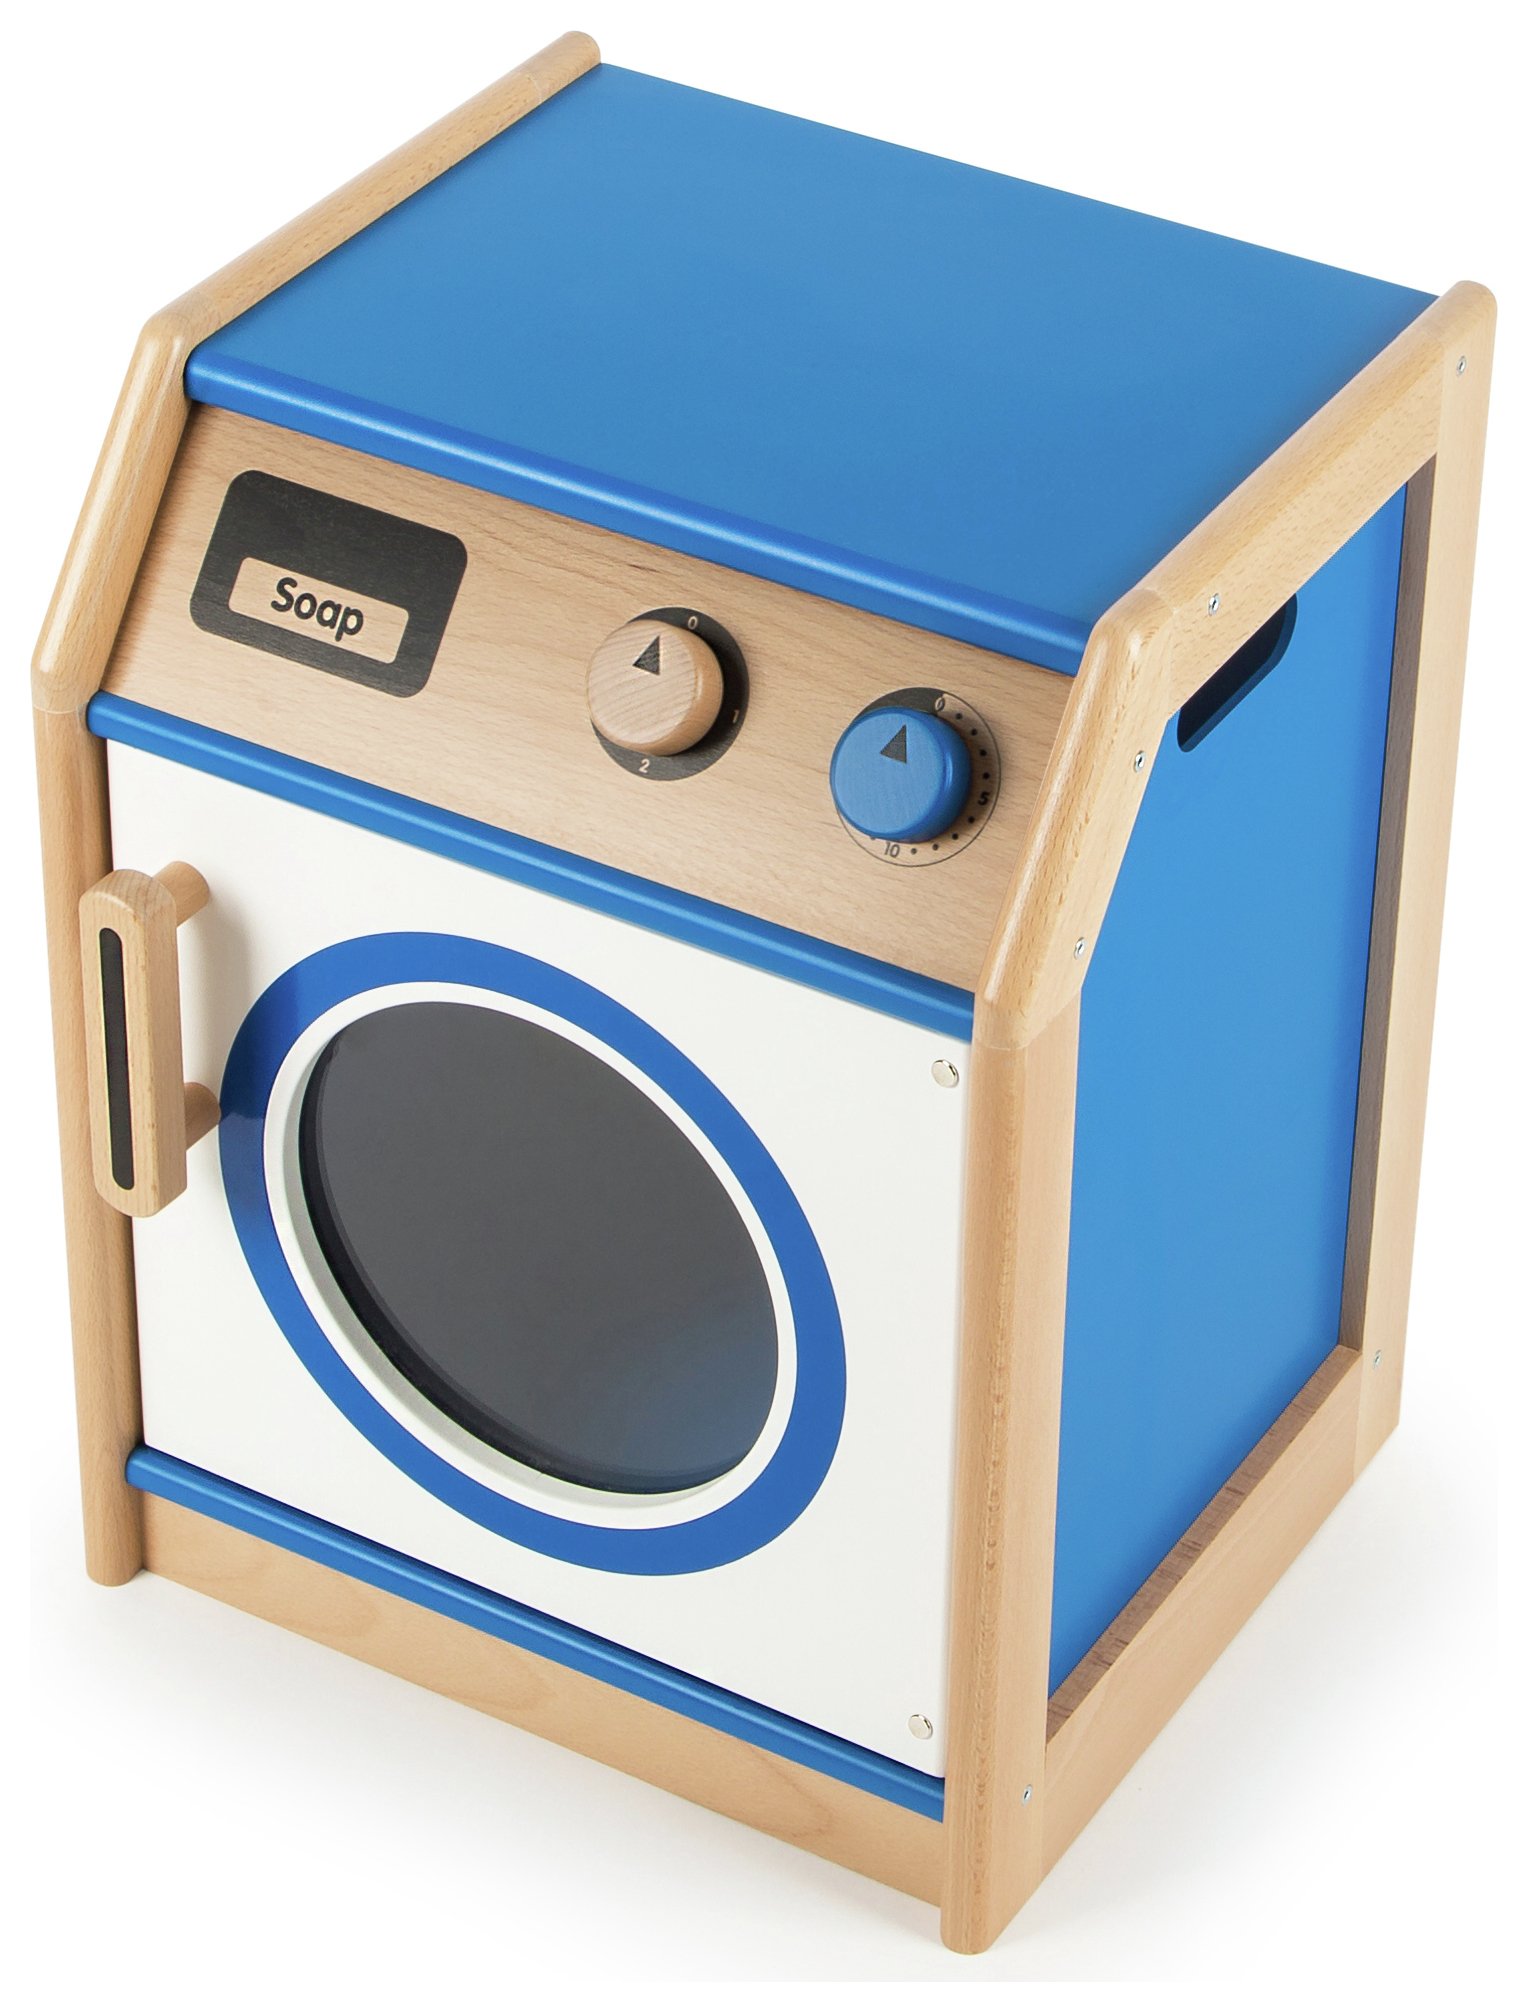 Tidlo Toy Washing Machine. review